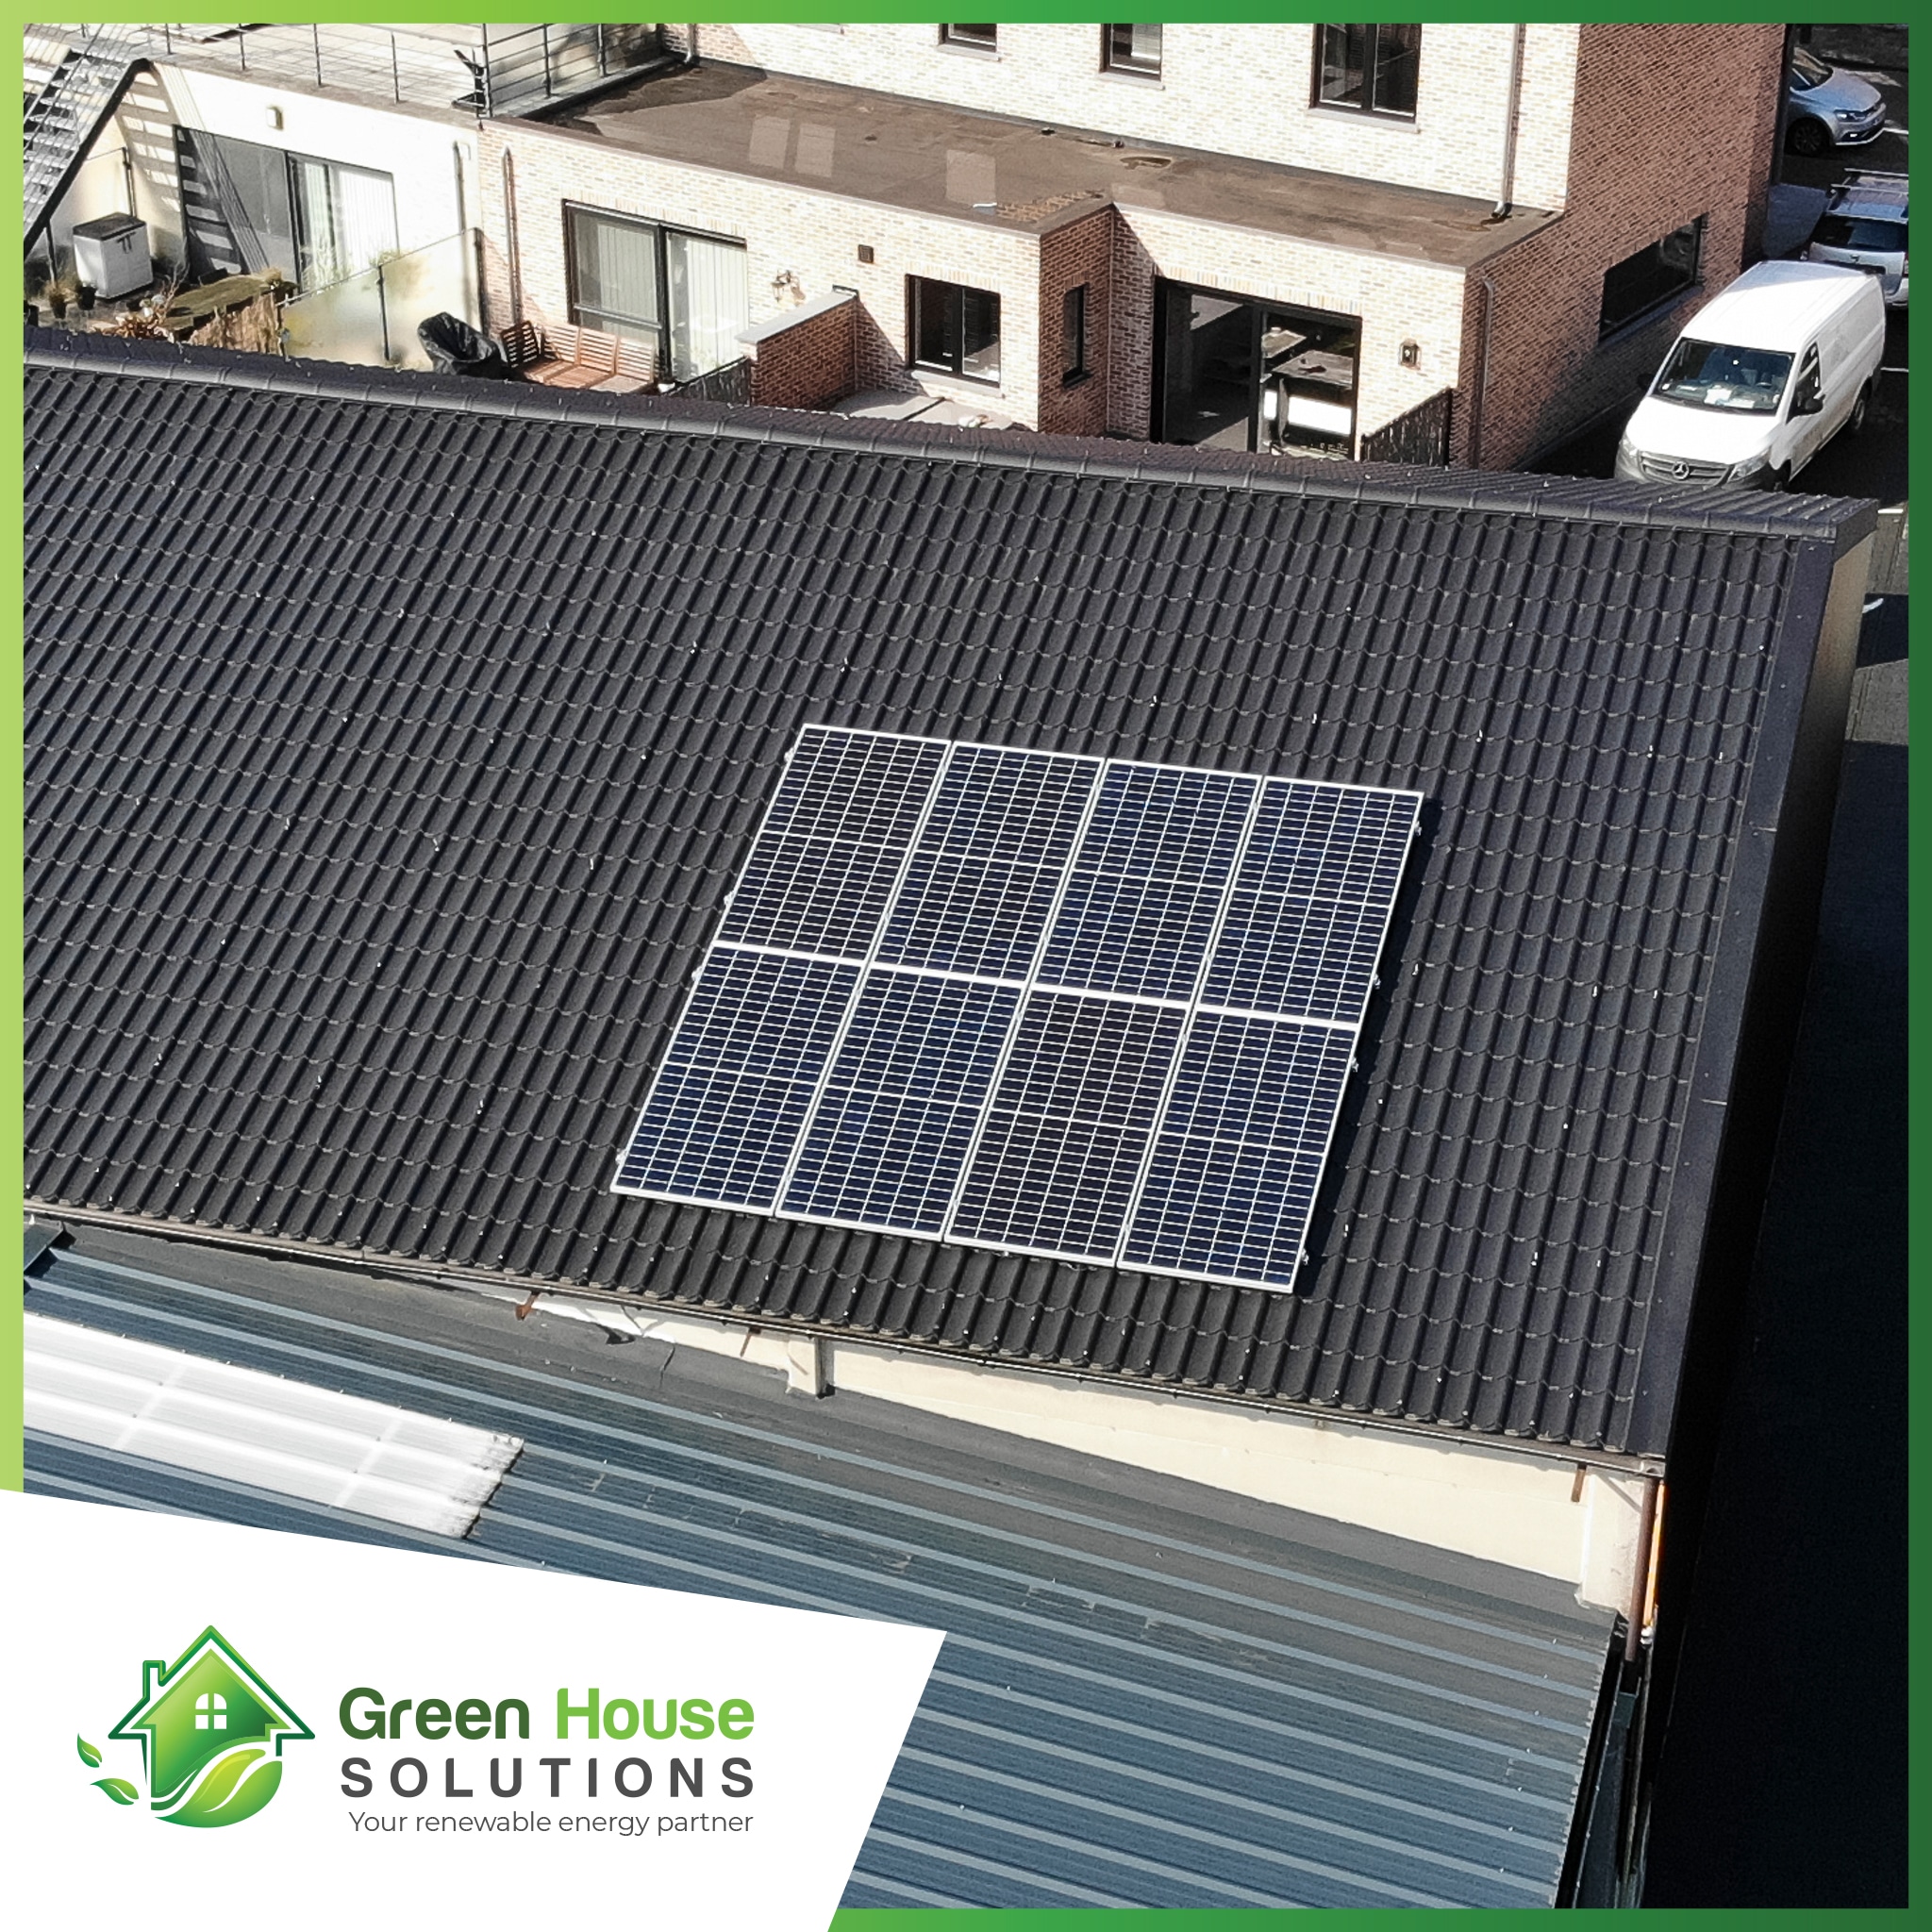 Green House Solutions zonnepanelen plaatsen installeren of kopen 00042